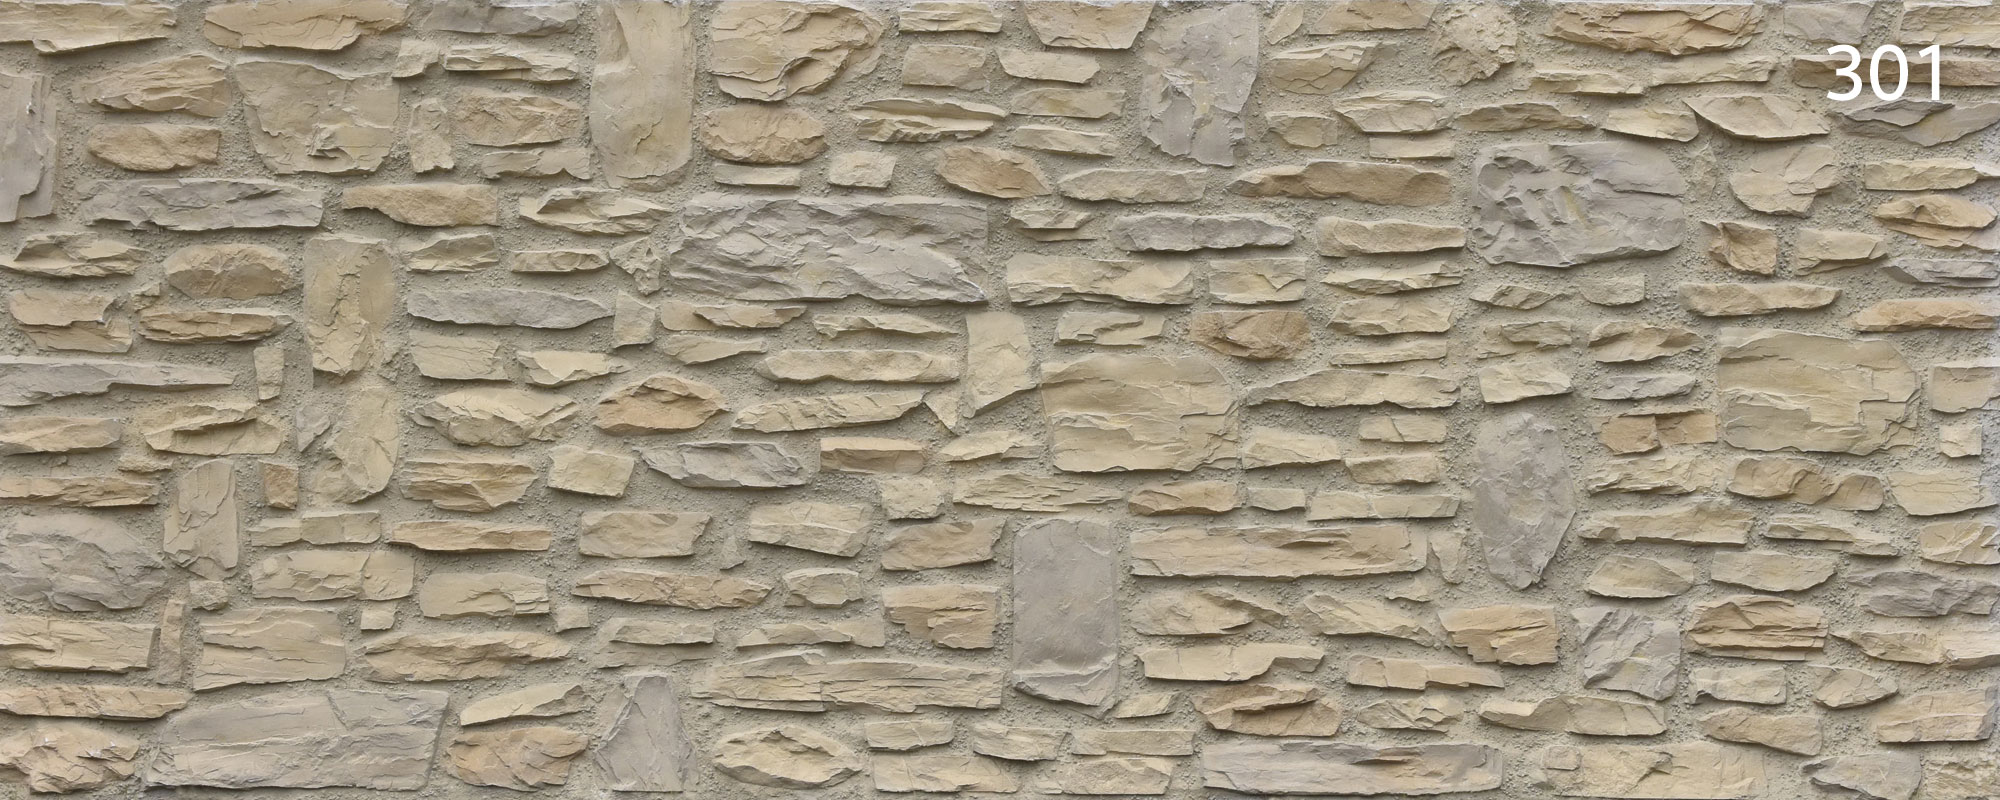 Steinpaneel 301 Rustica cobriza - ca. 3,31 x1,33 m